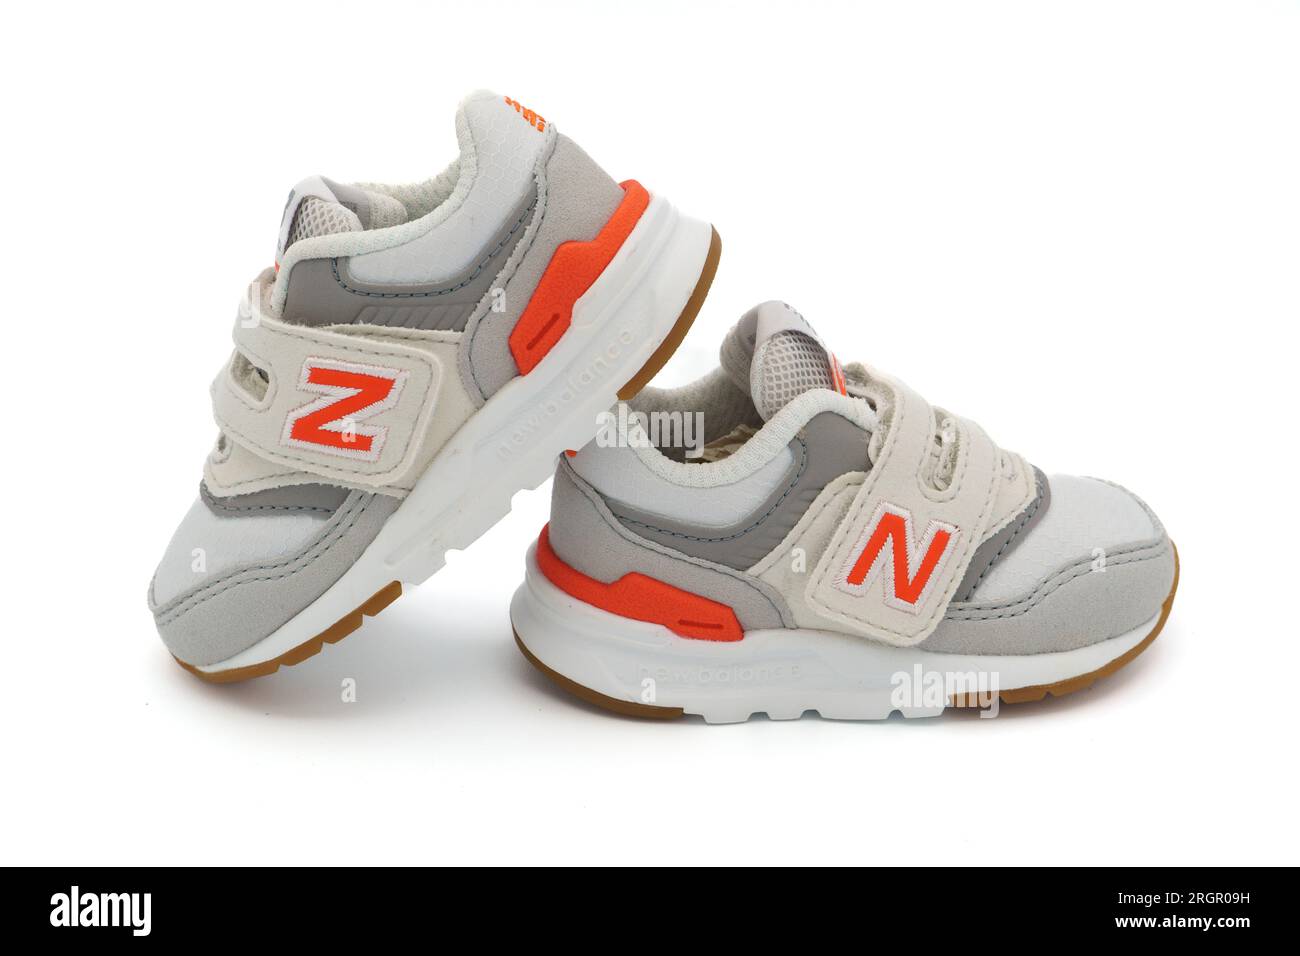 Un paio di sneaker New Balance 997H bianche per neonati, isolate su sfondo bianco Foto Stock